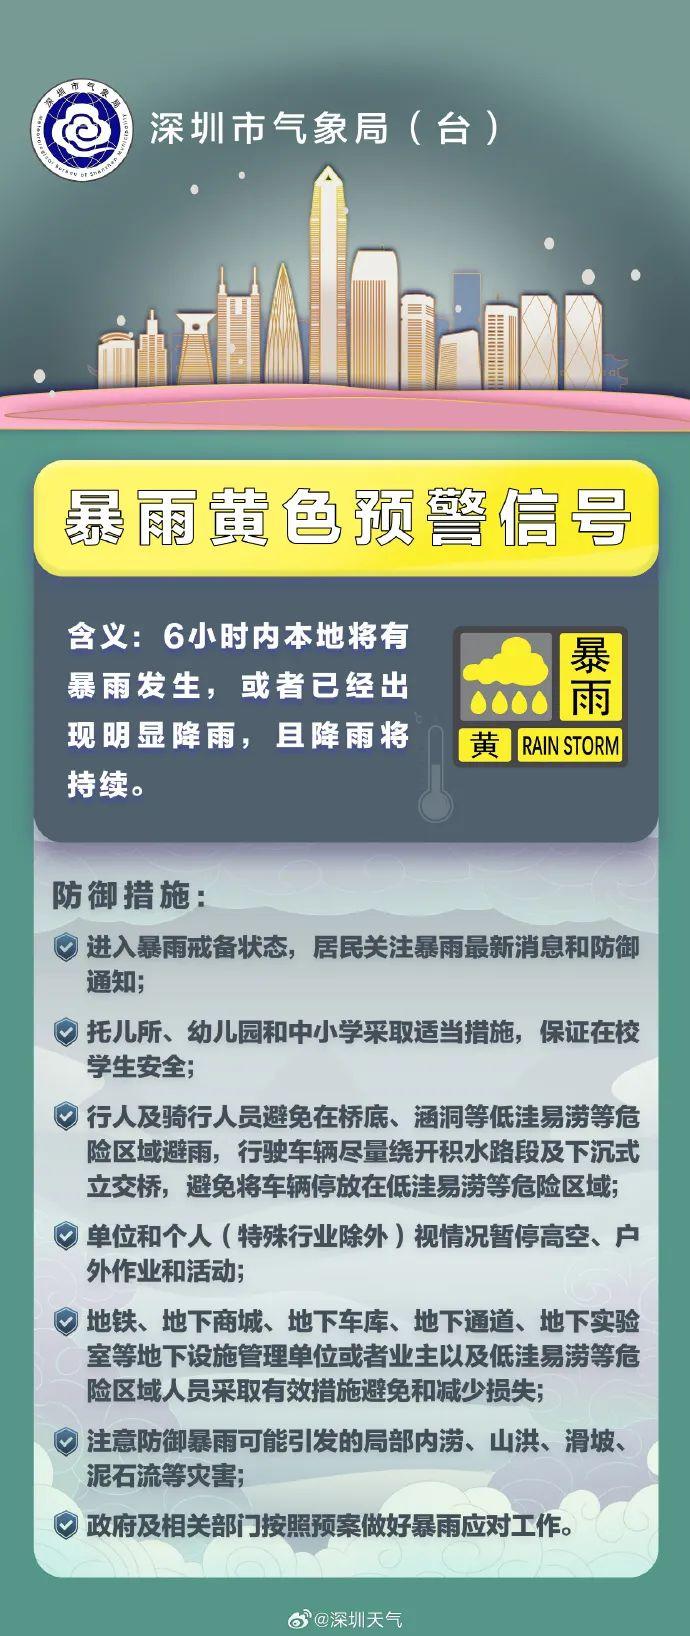 深圳分区暴雨黄色预警、雷电预警信号生效中！